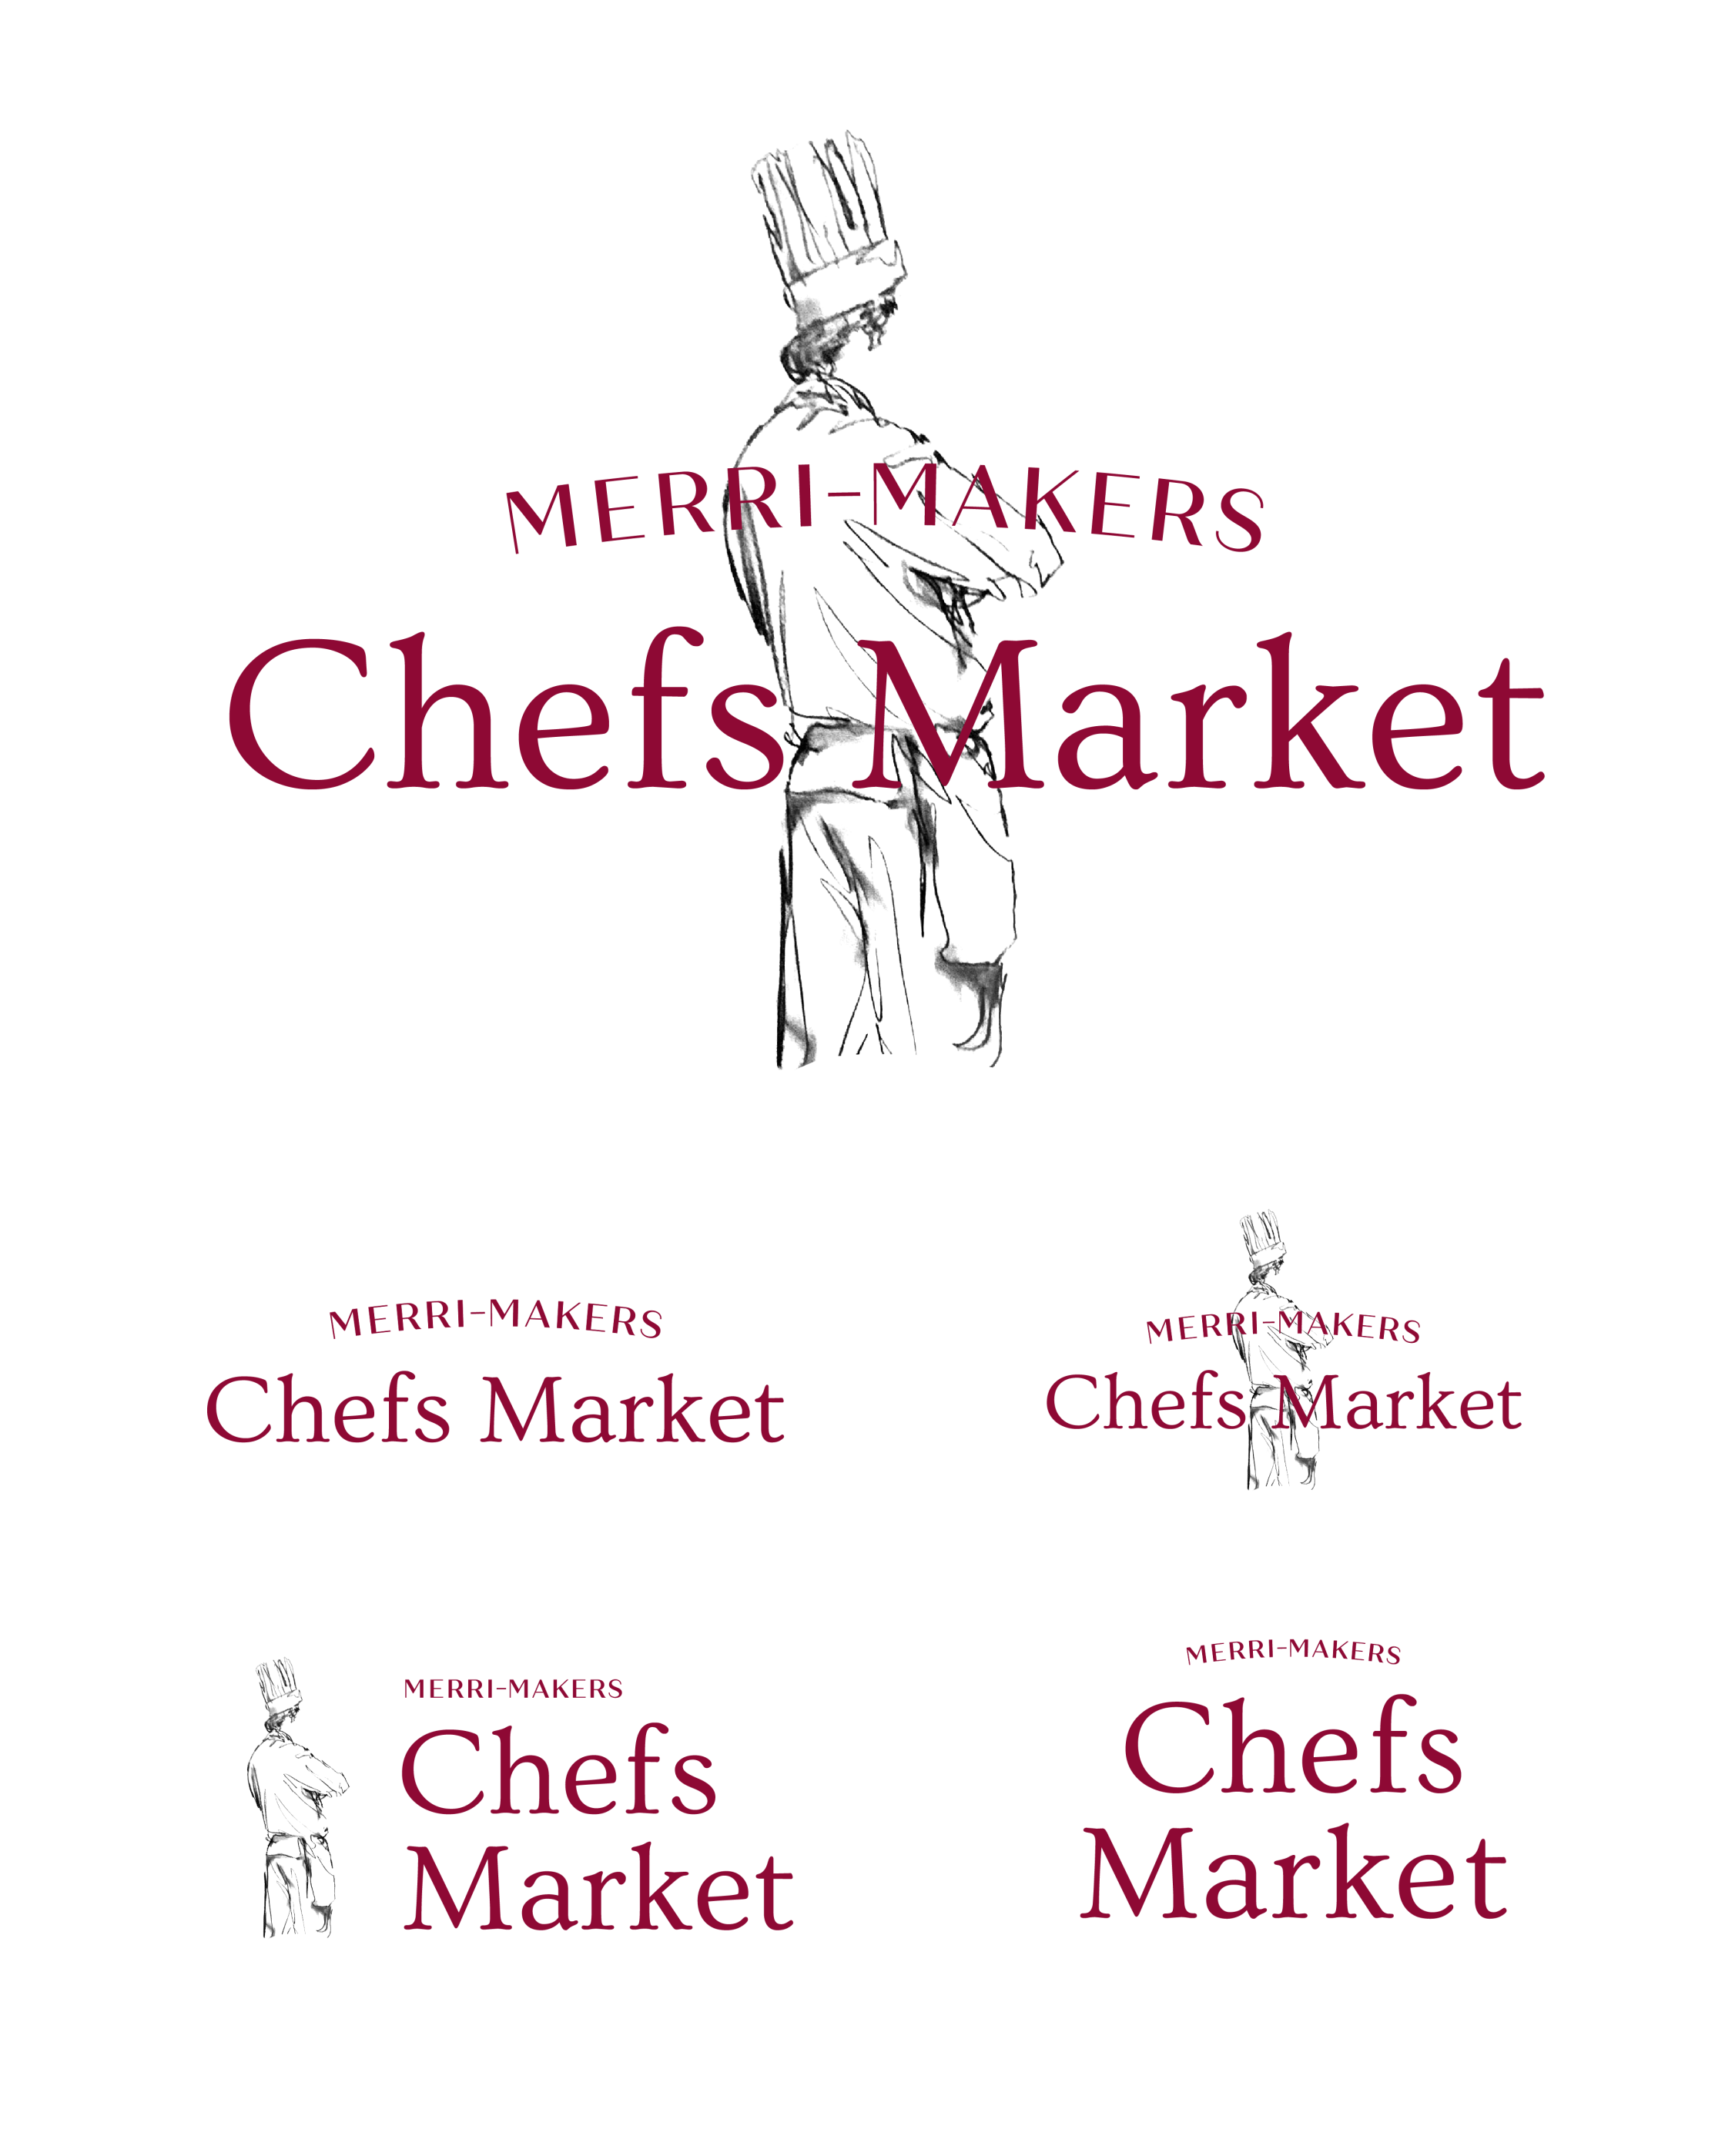 Merri-Makers Chefs Market